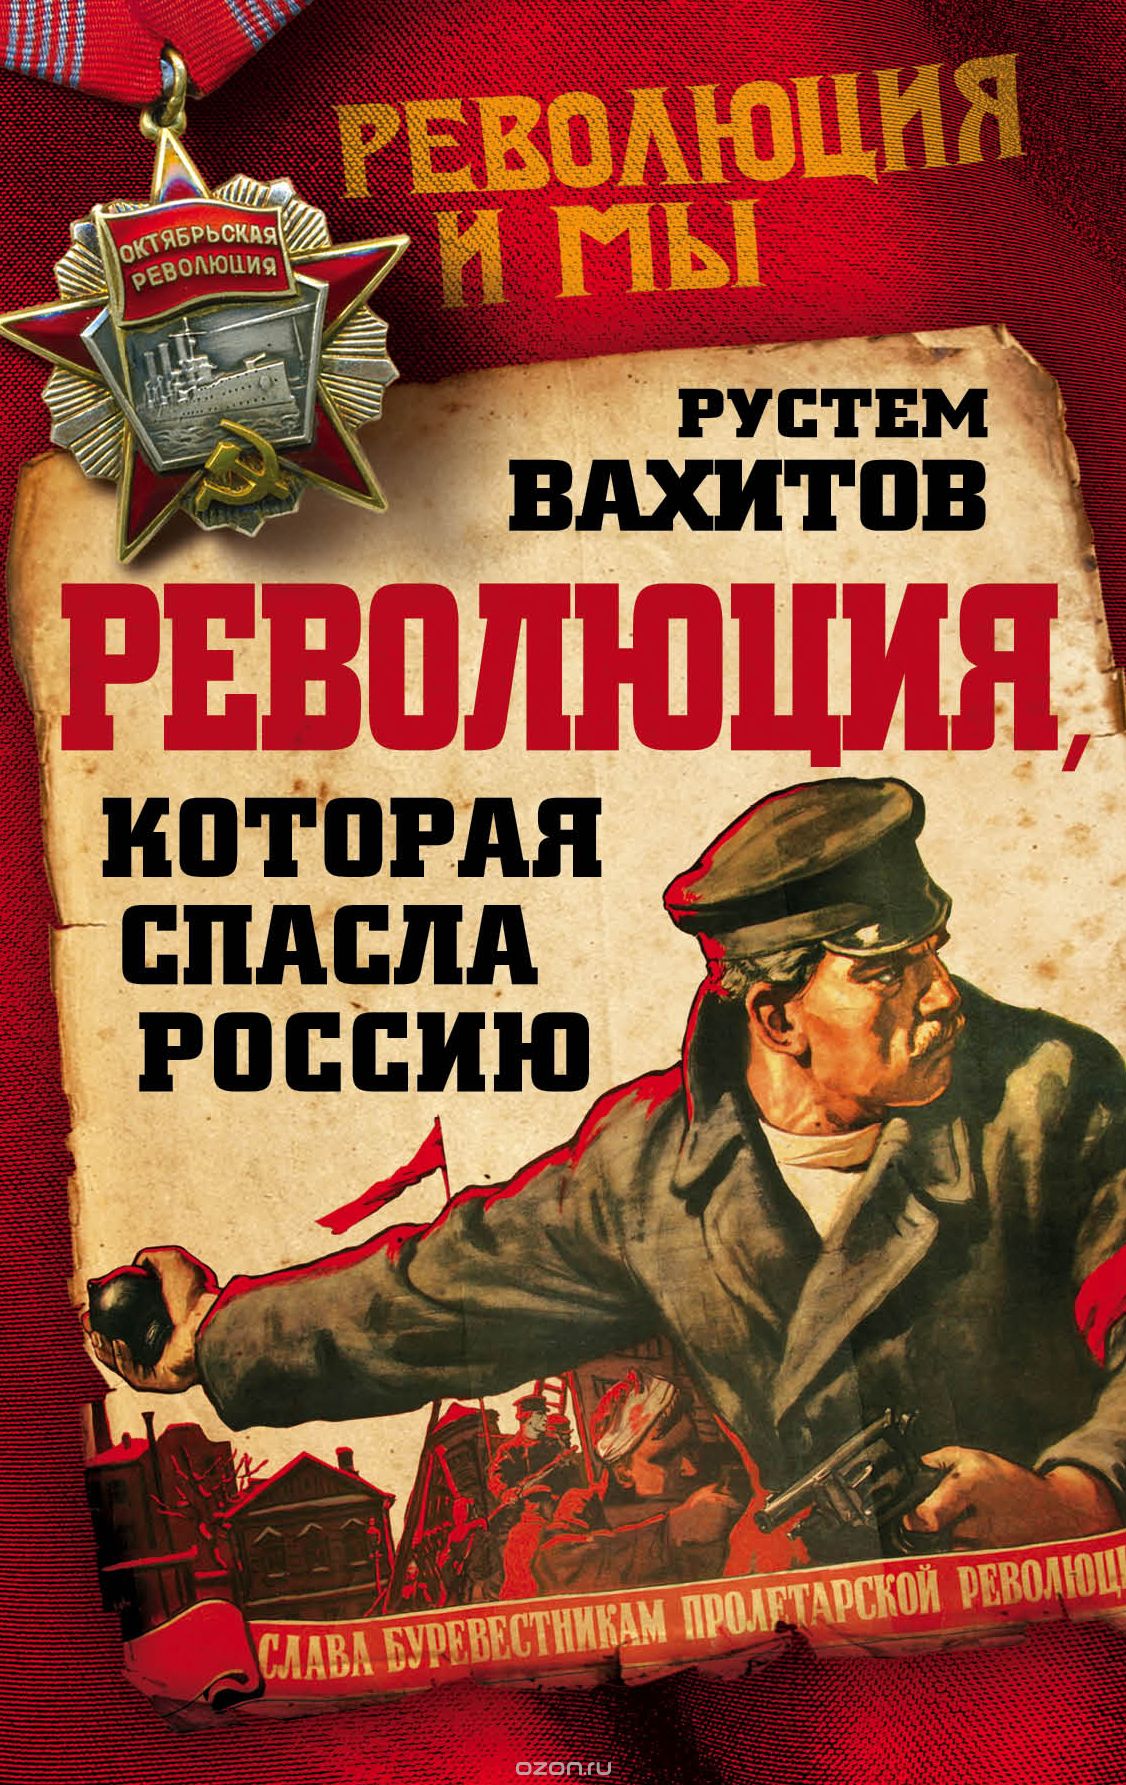 Скачать книгу "Революция, которая спасла Россию, Рустем Вахитов"